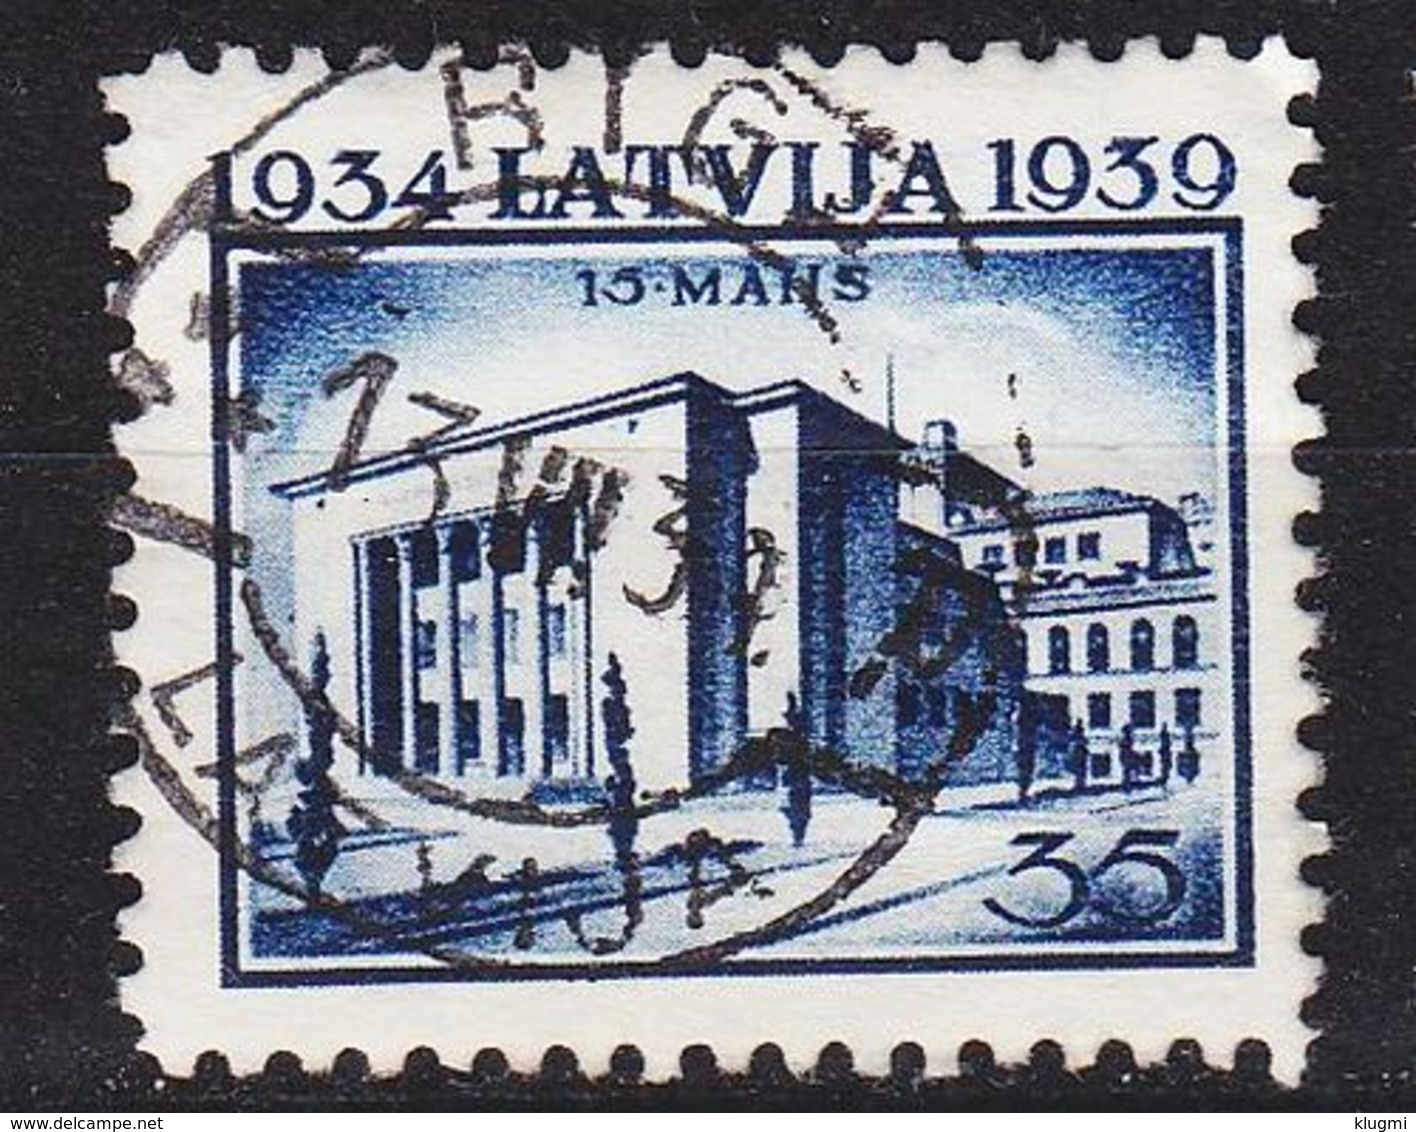 LETTLAND LATVIJA [1939] MiNr 0276 ( O/used ) - Lettland